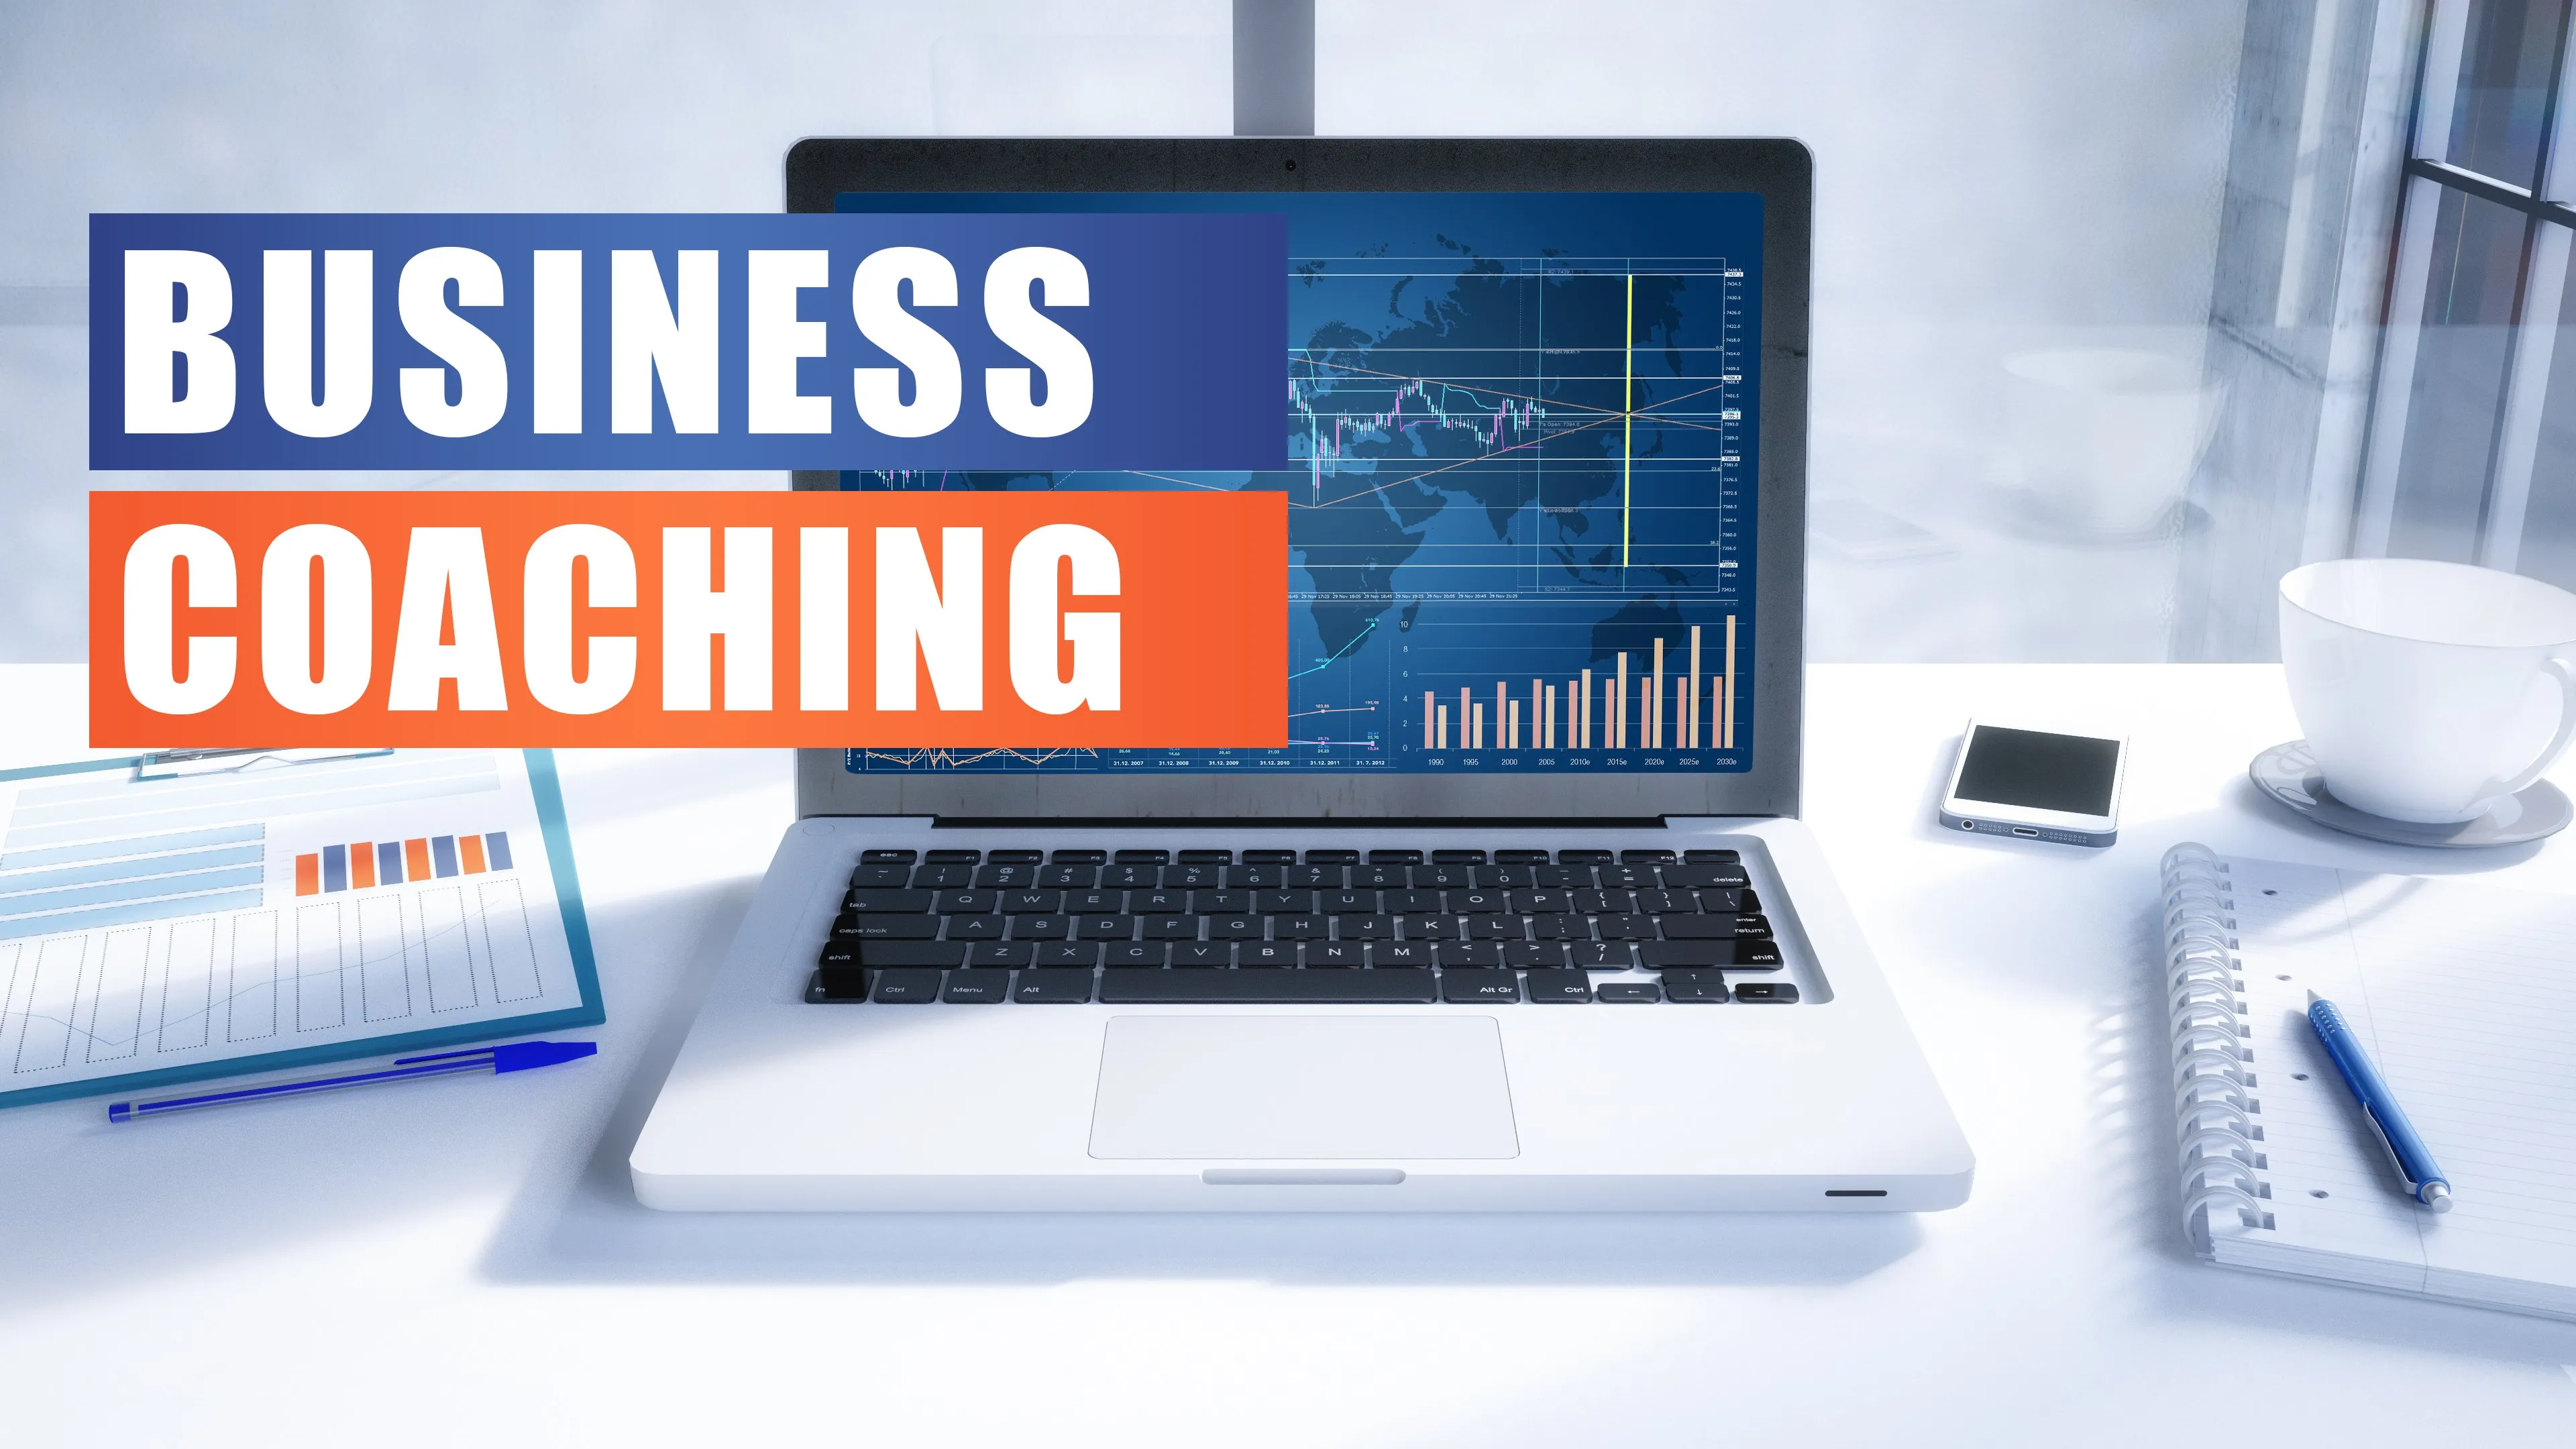 1:1 Business Coaching